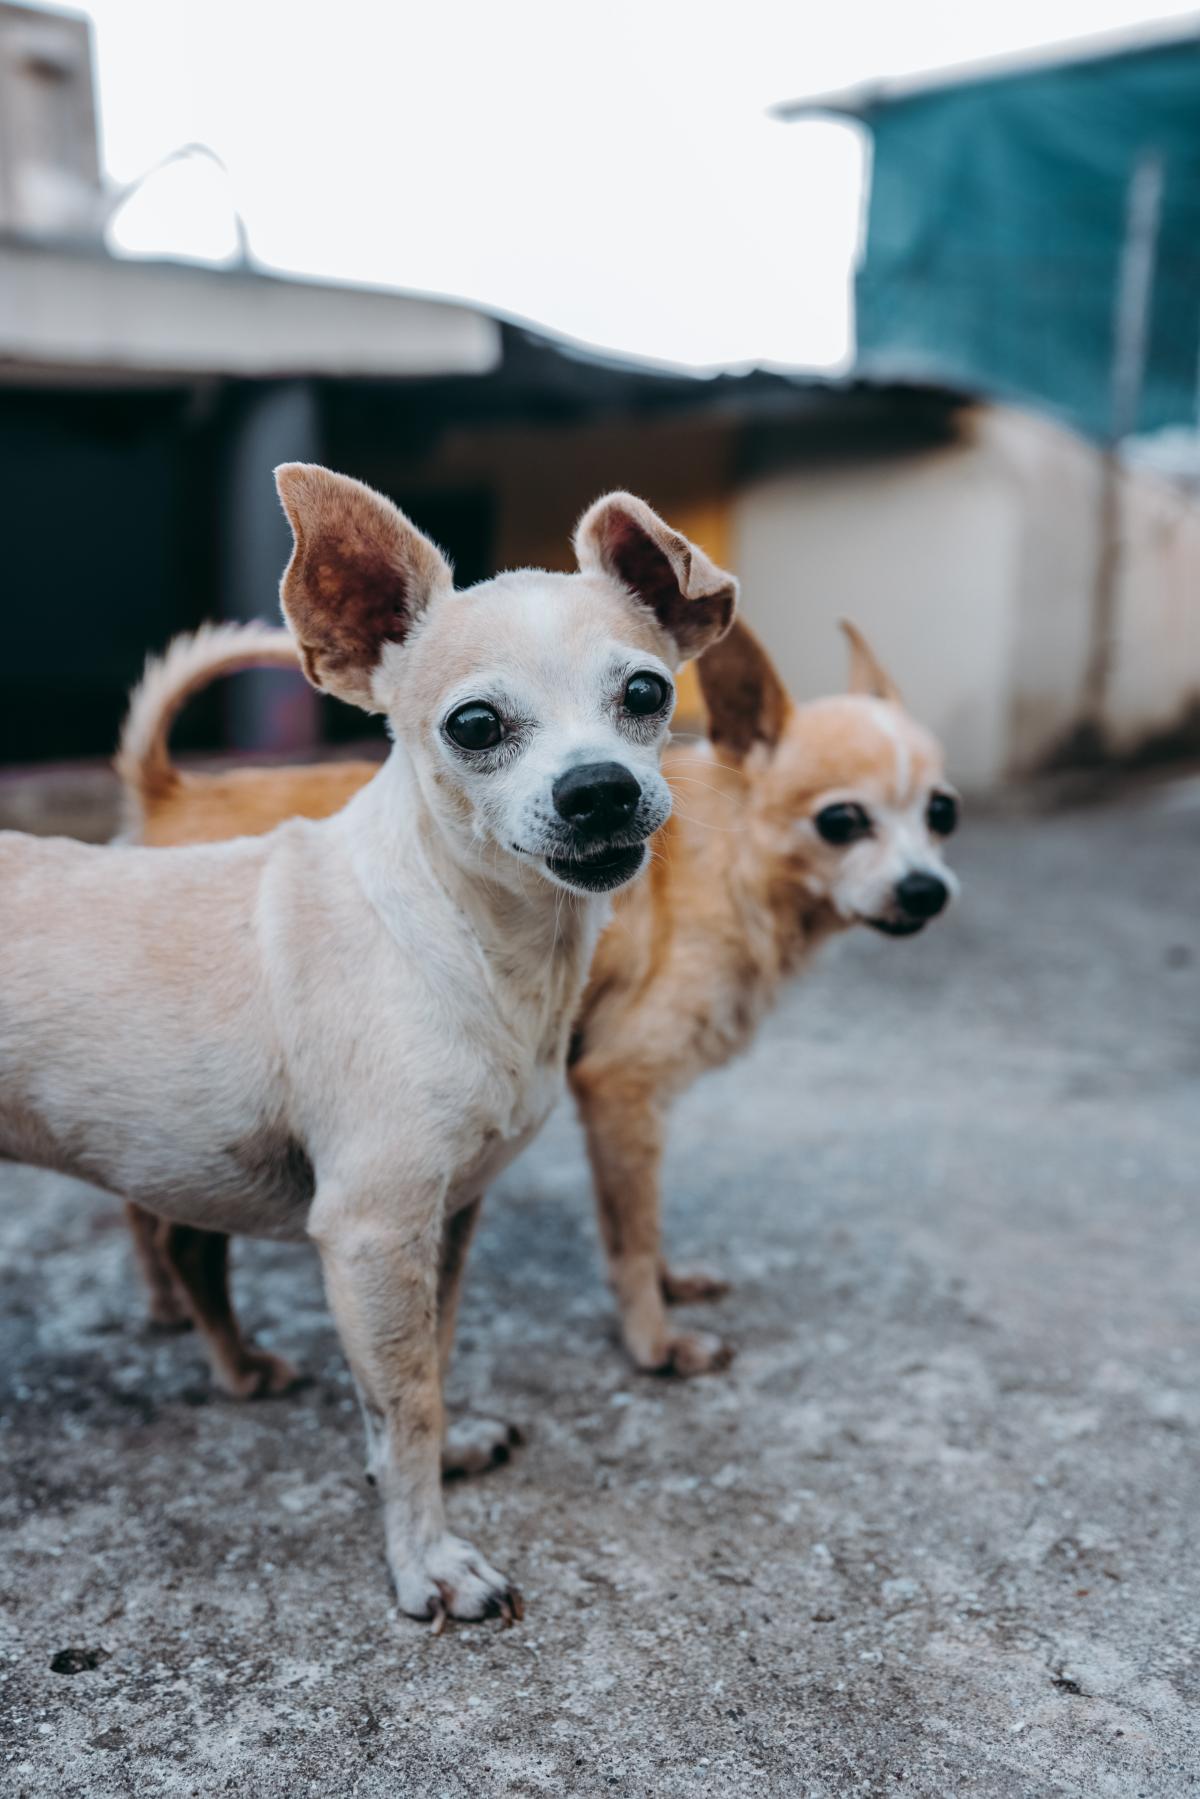 Twee kleine honden op straat die naar de camera kijken